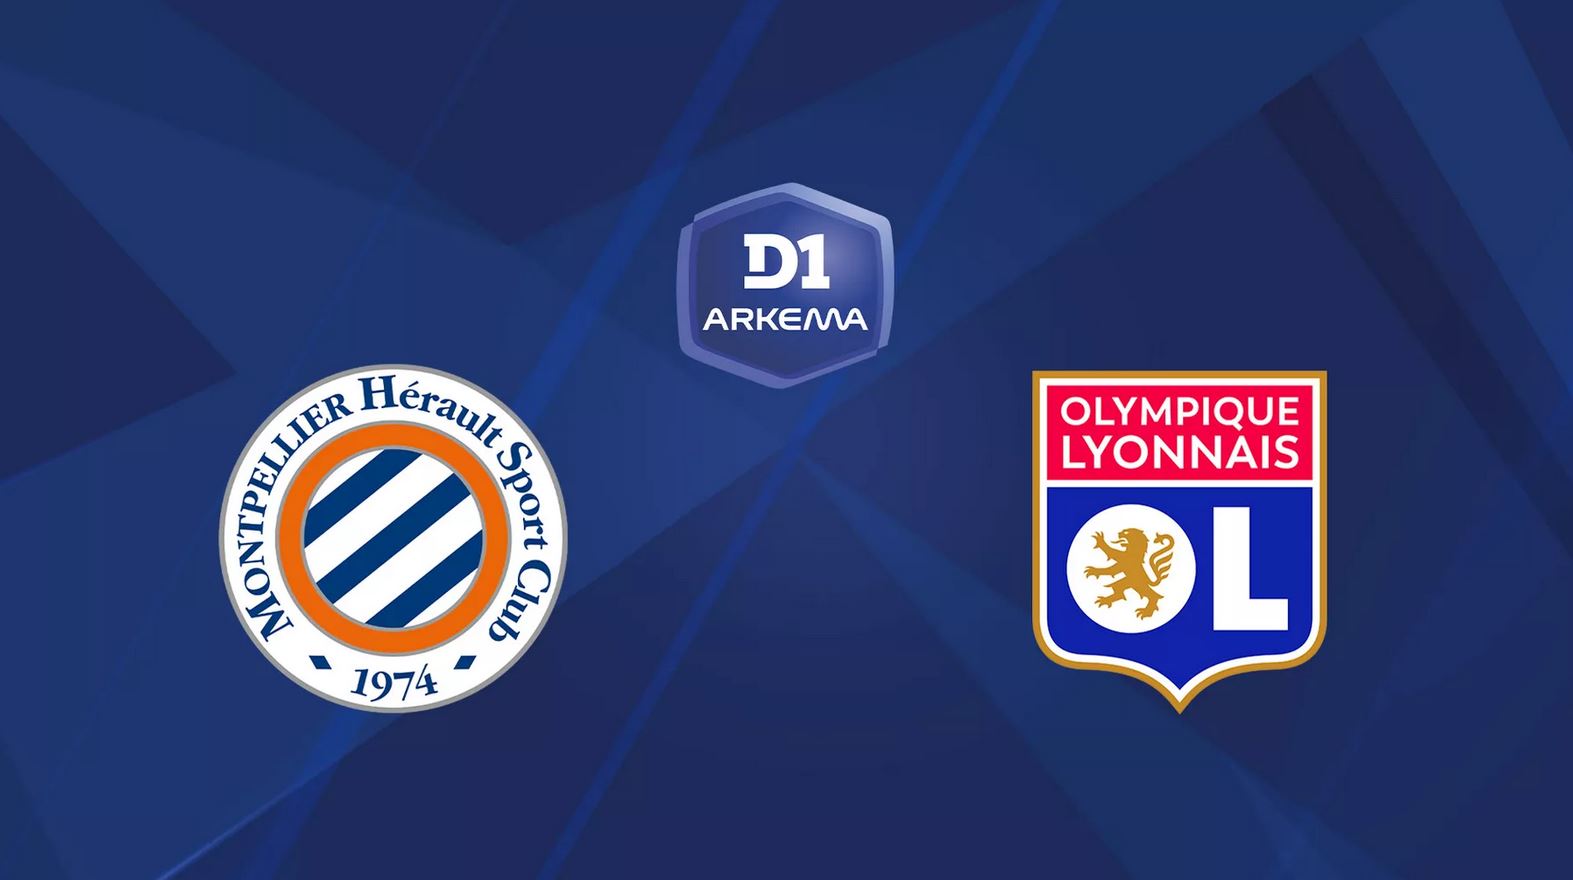 Montpellier / Lyon (TV/Streaming) Sur quelles chaînes et à quelle heure suivre le match de D1 Arkéma ?